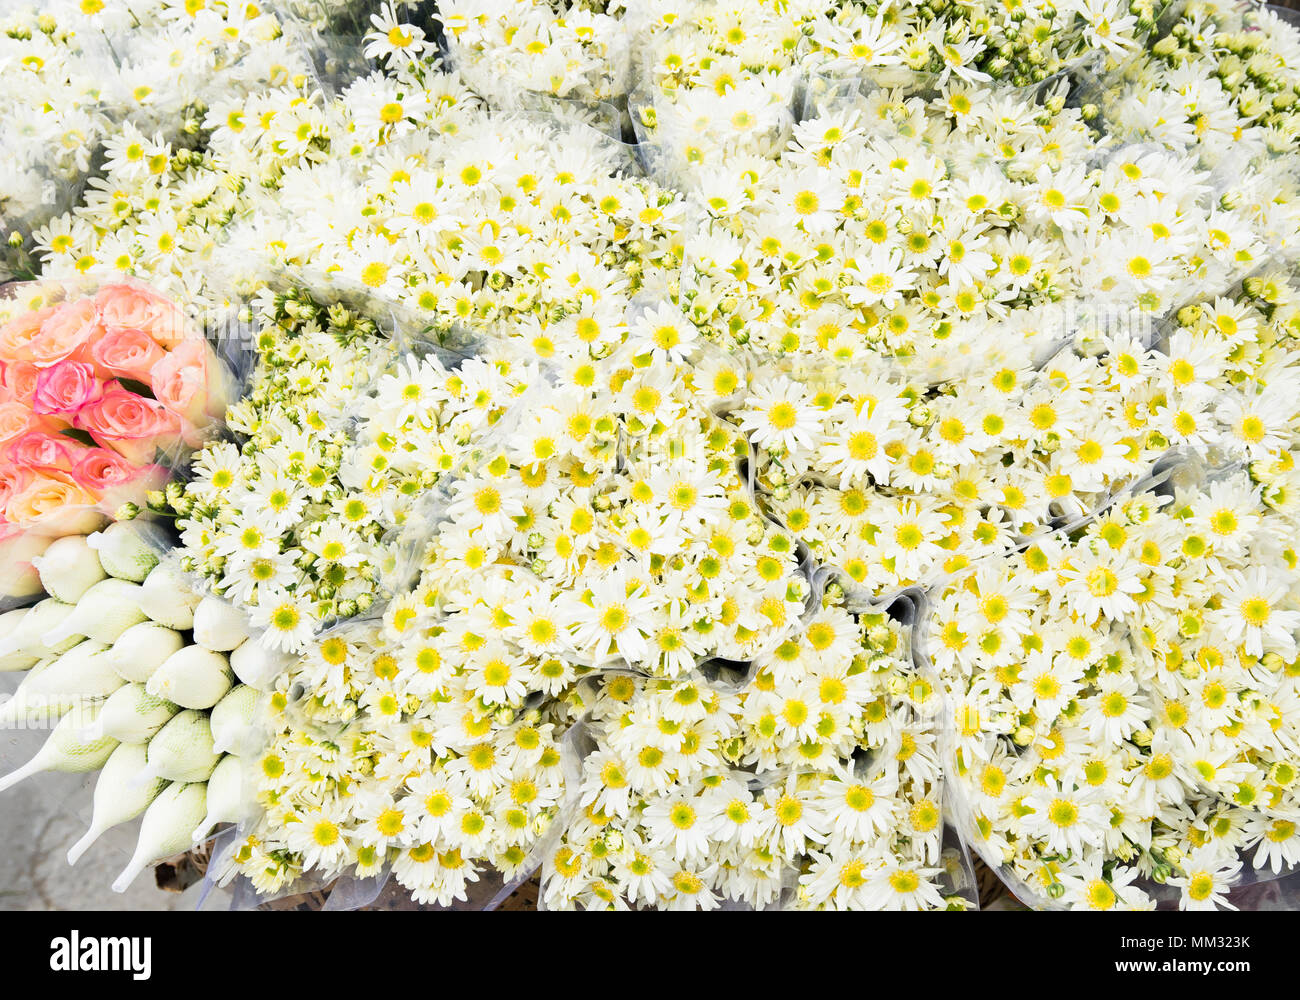 Daisy flower in full bloom Stock Photo